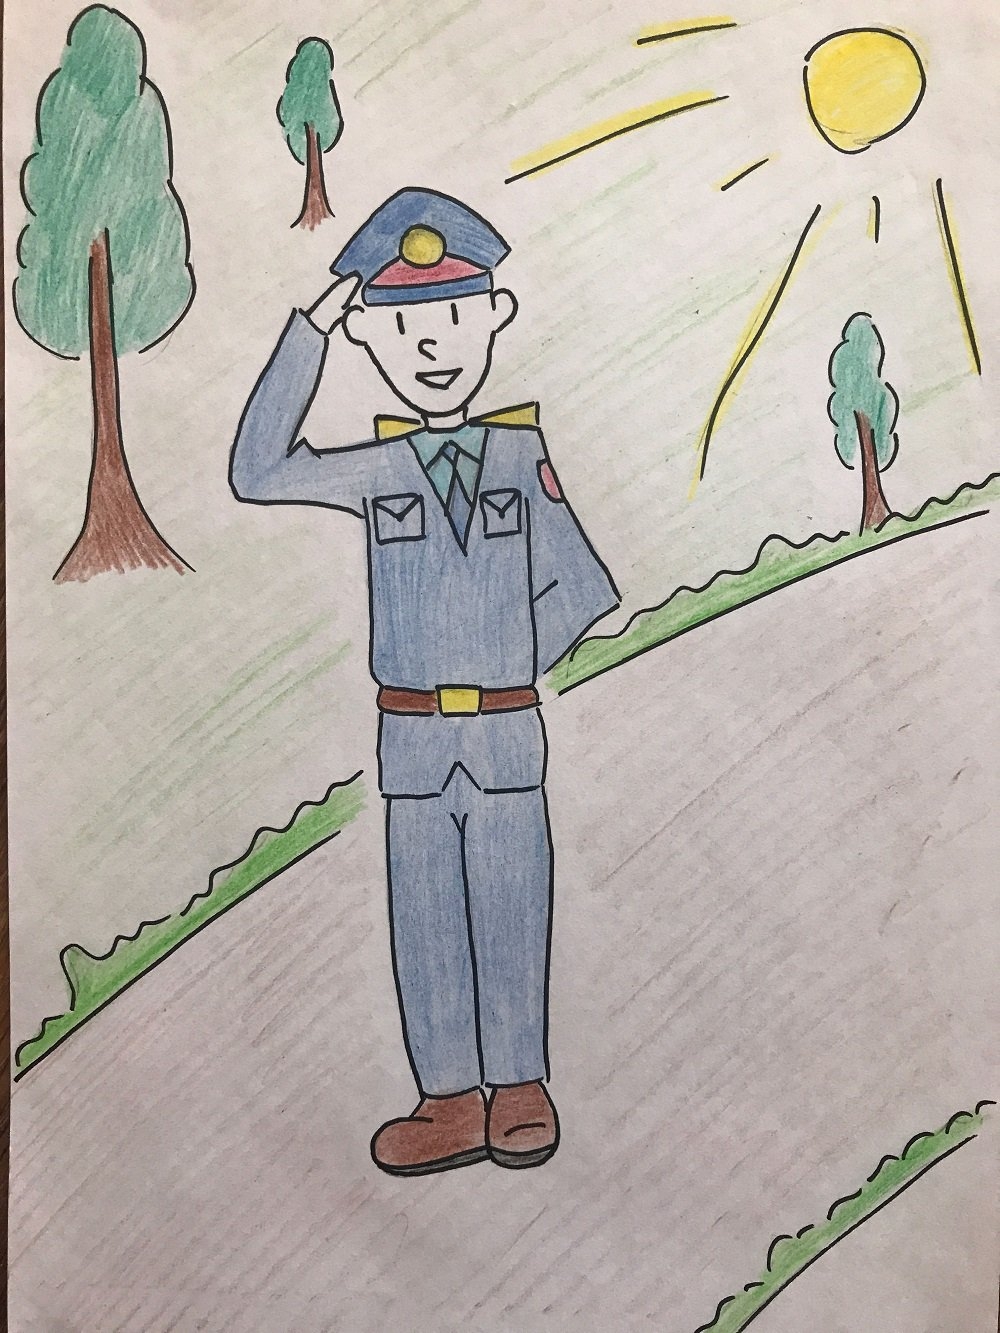 Стартовал конкурс детских рисунков о работе полиции